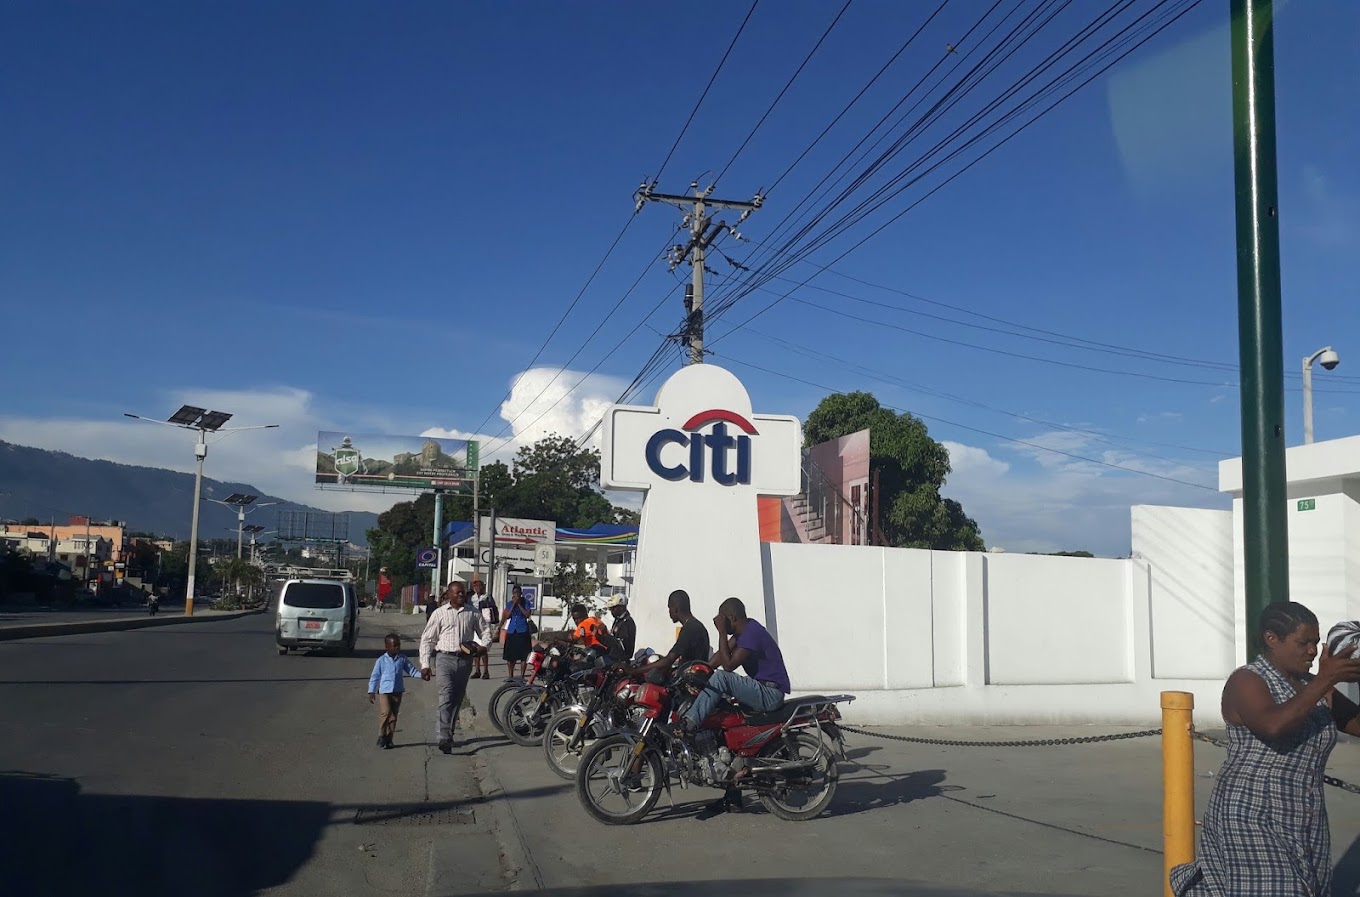     Citibank quitte Haïti, un mauvais signal pour le pays

